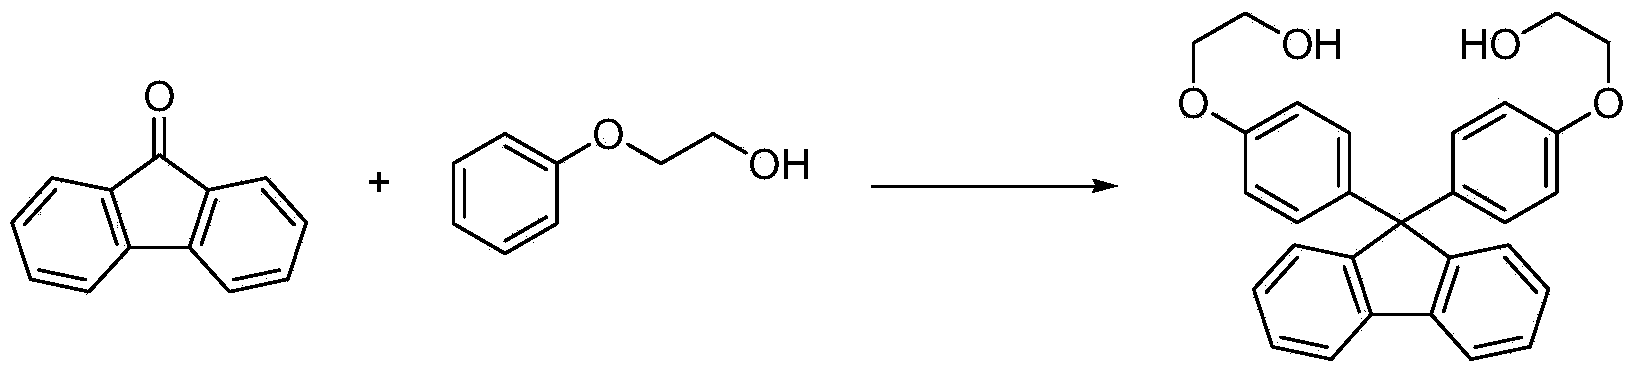 Method for preparing 9,9-bis[(4-hydroxy oxyethyl) phenyl] fluorene